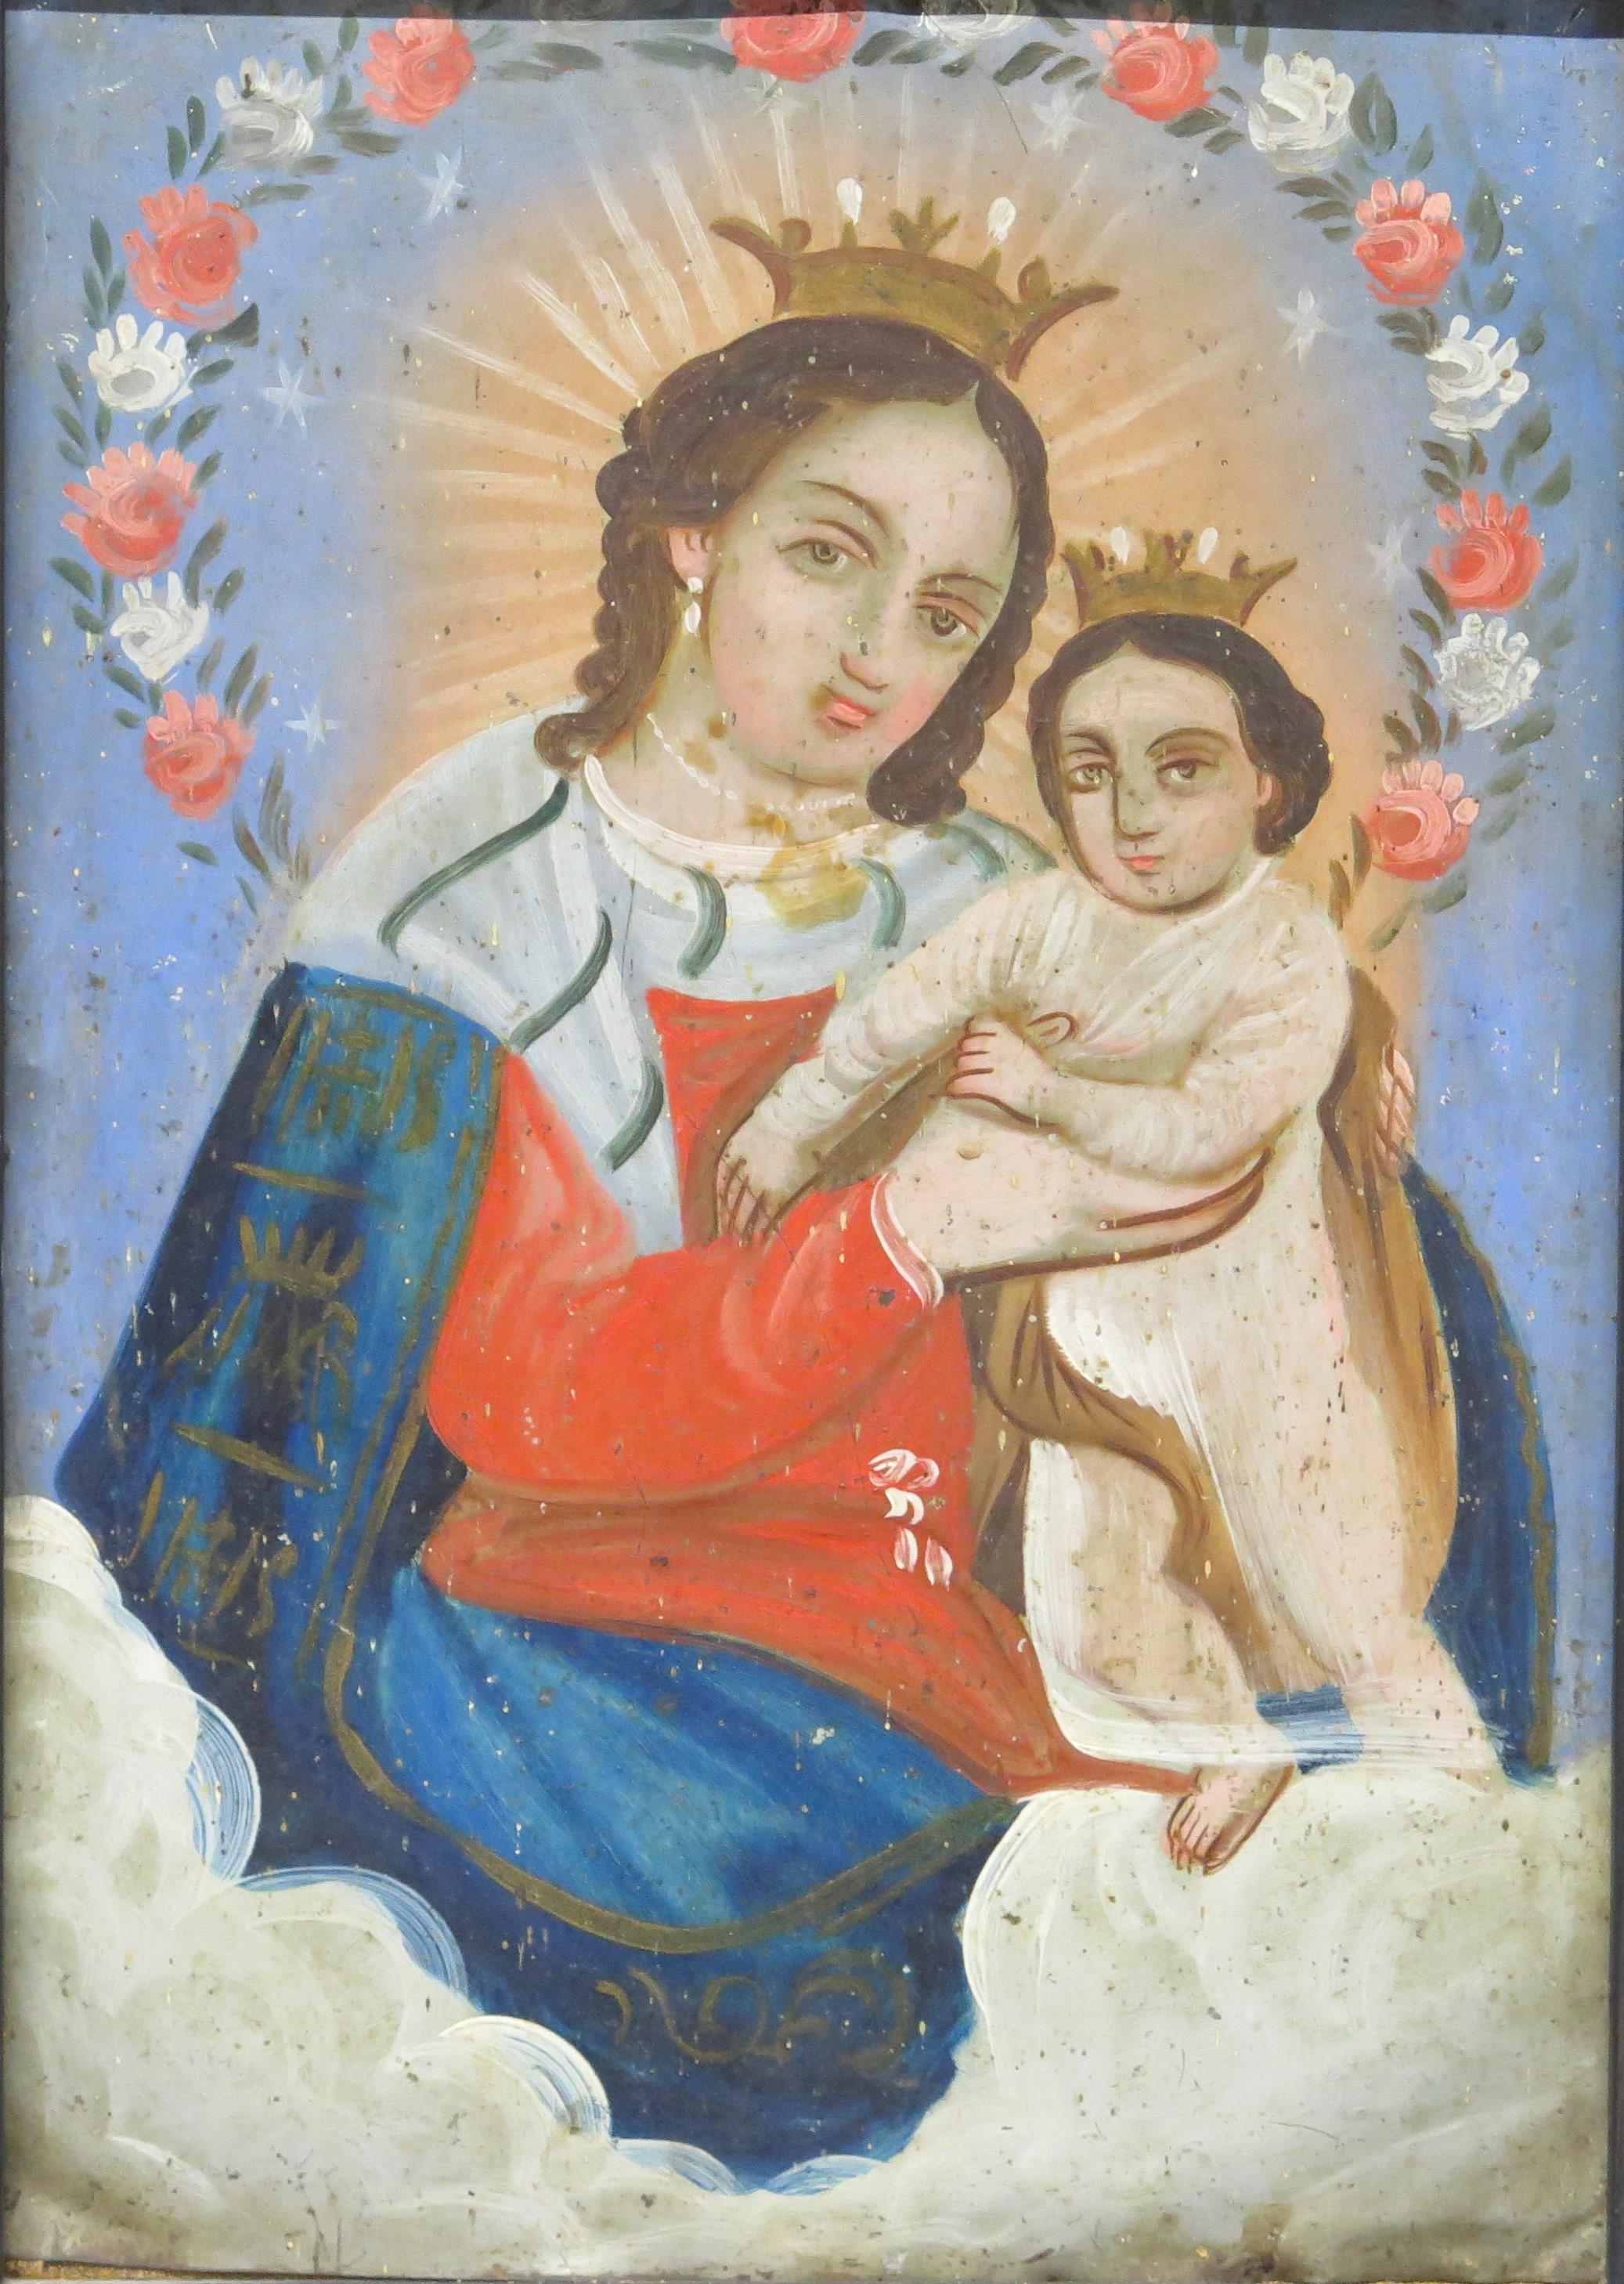 Huile sur étain retablo nuetra señora del refugio ( Marie refuge des pécheurs ) ou madone et enfant, Elle est couronnée et tient l'enfant christ, qui est également couronné elle porte des vêtements bleus et orange sur un fond bleu clair. Mexique.